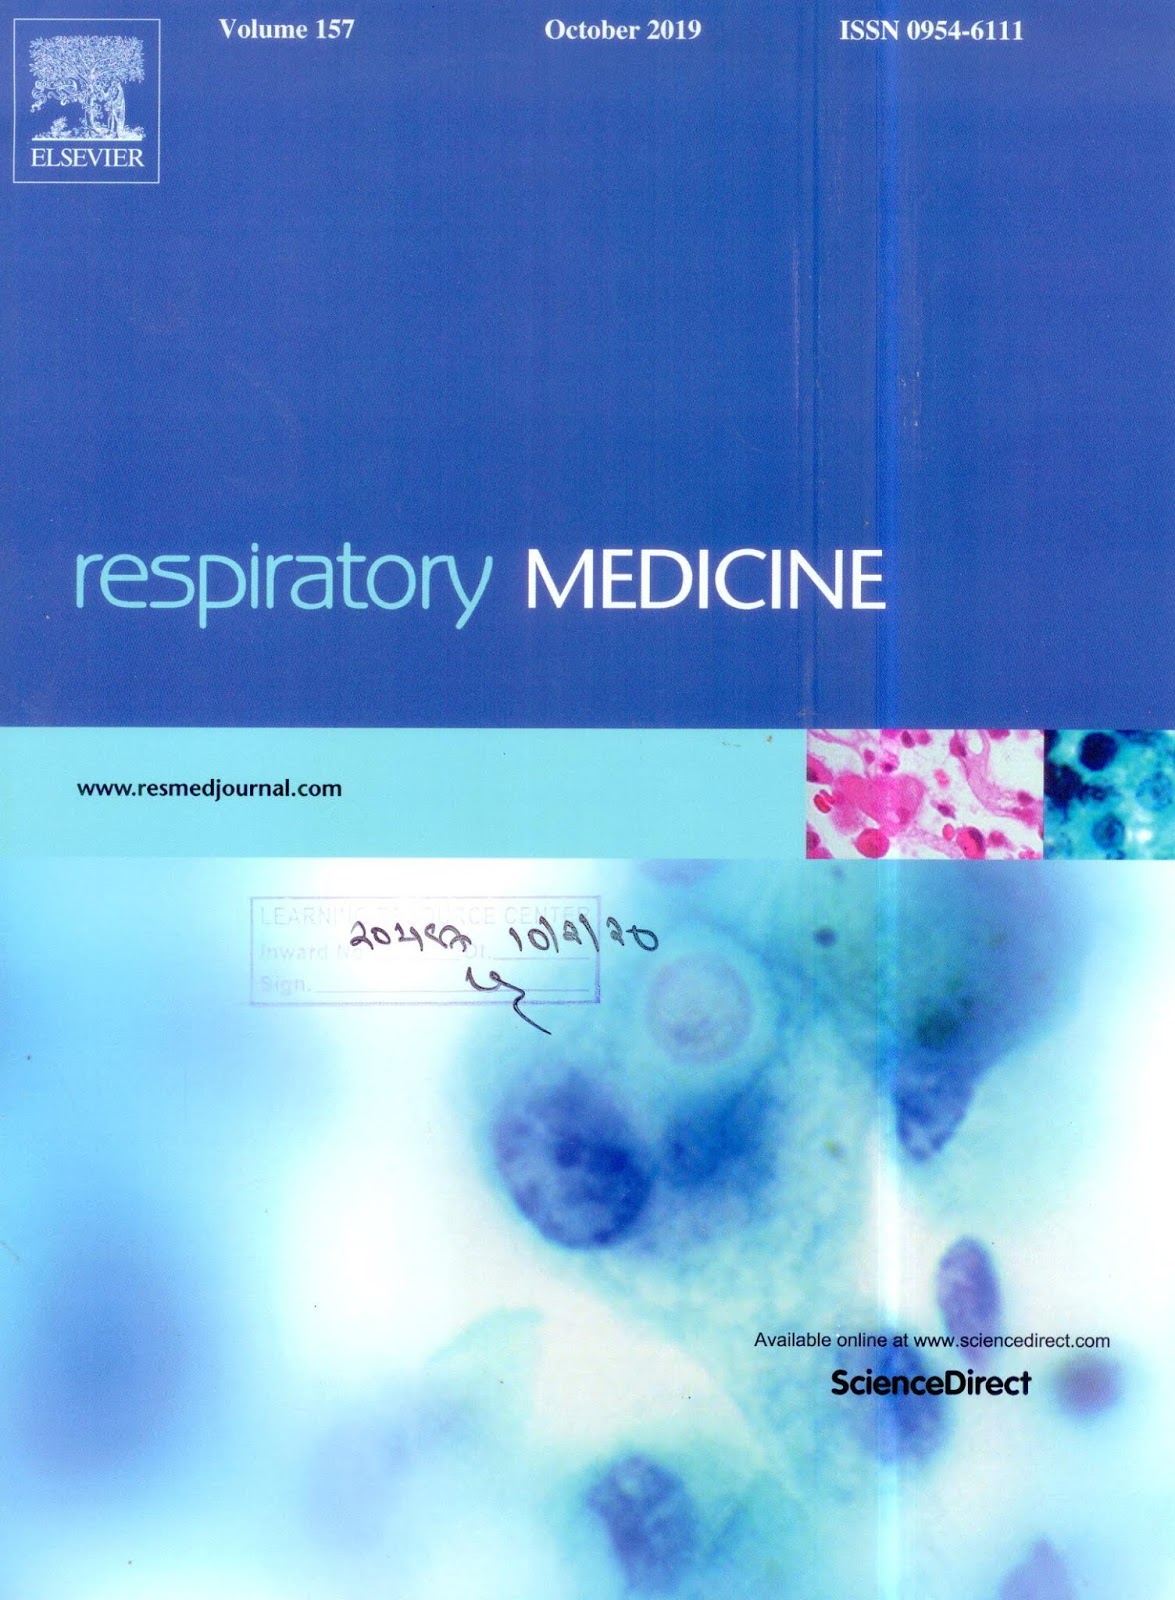 https://www.sciencedirect.com/journal/respiratory-medicine/vol/157/suppl/C